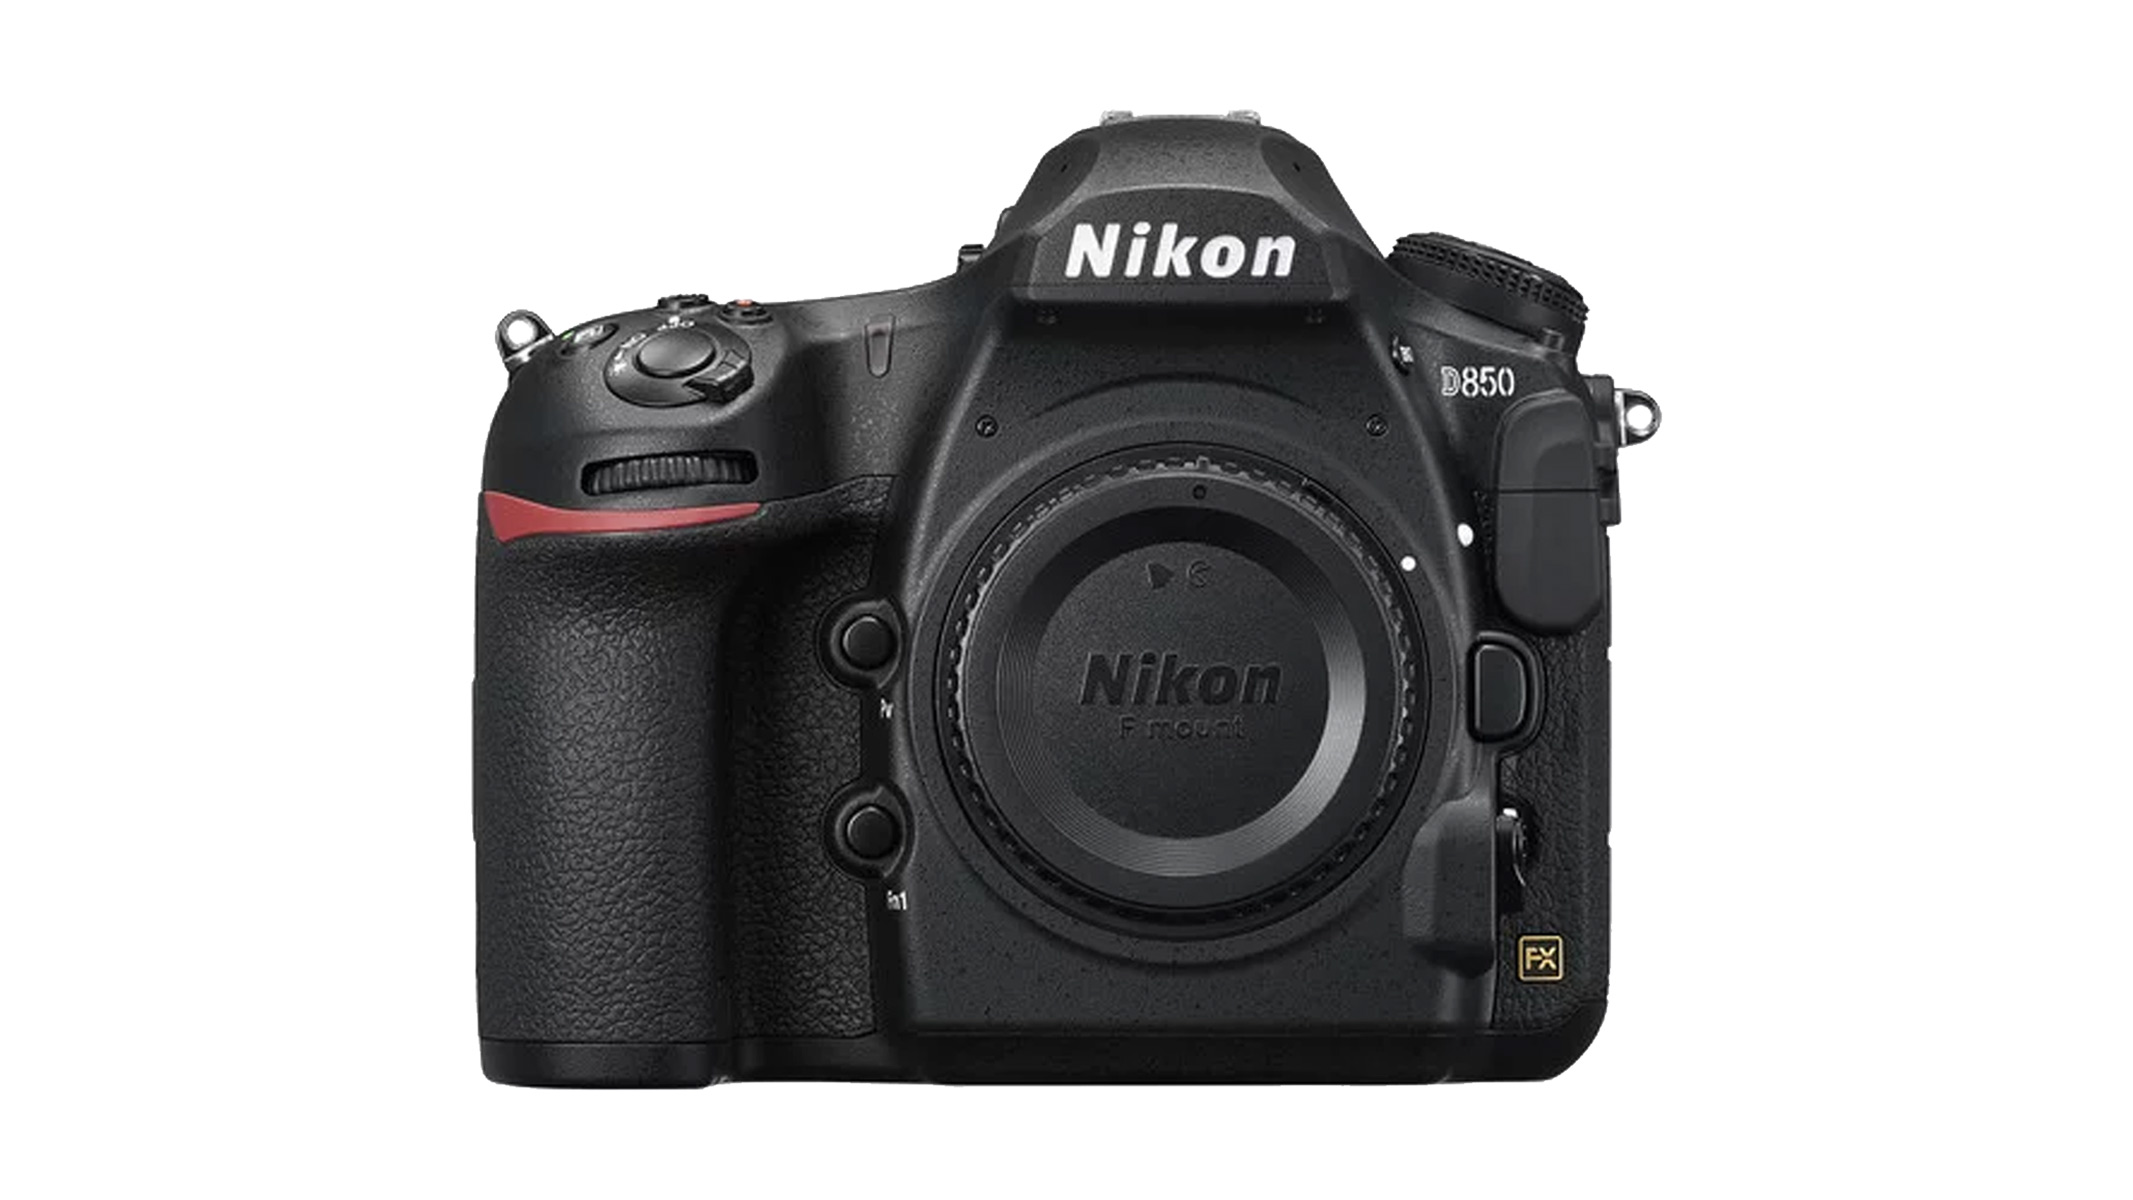 Nikon D850 stock image on white background